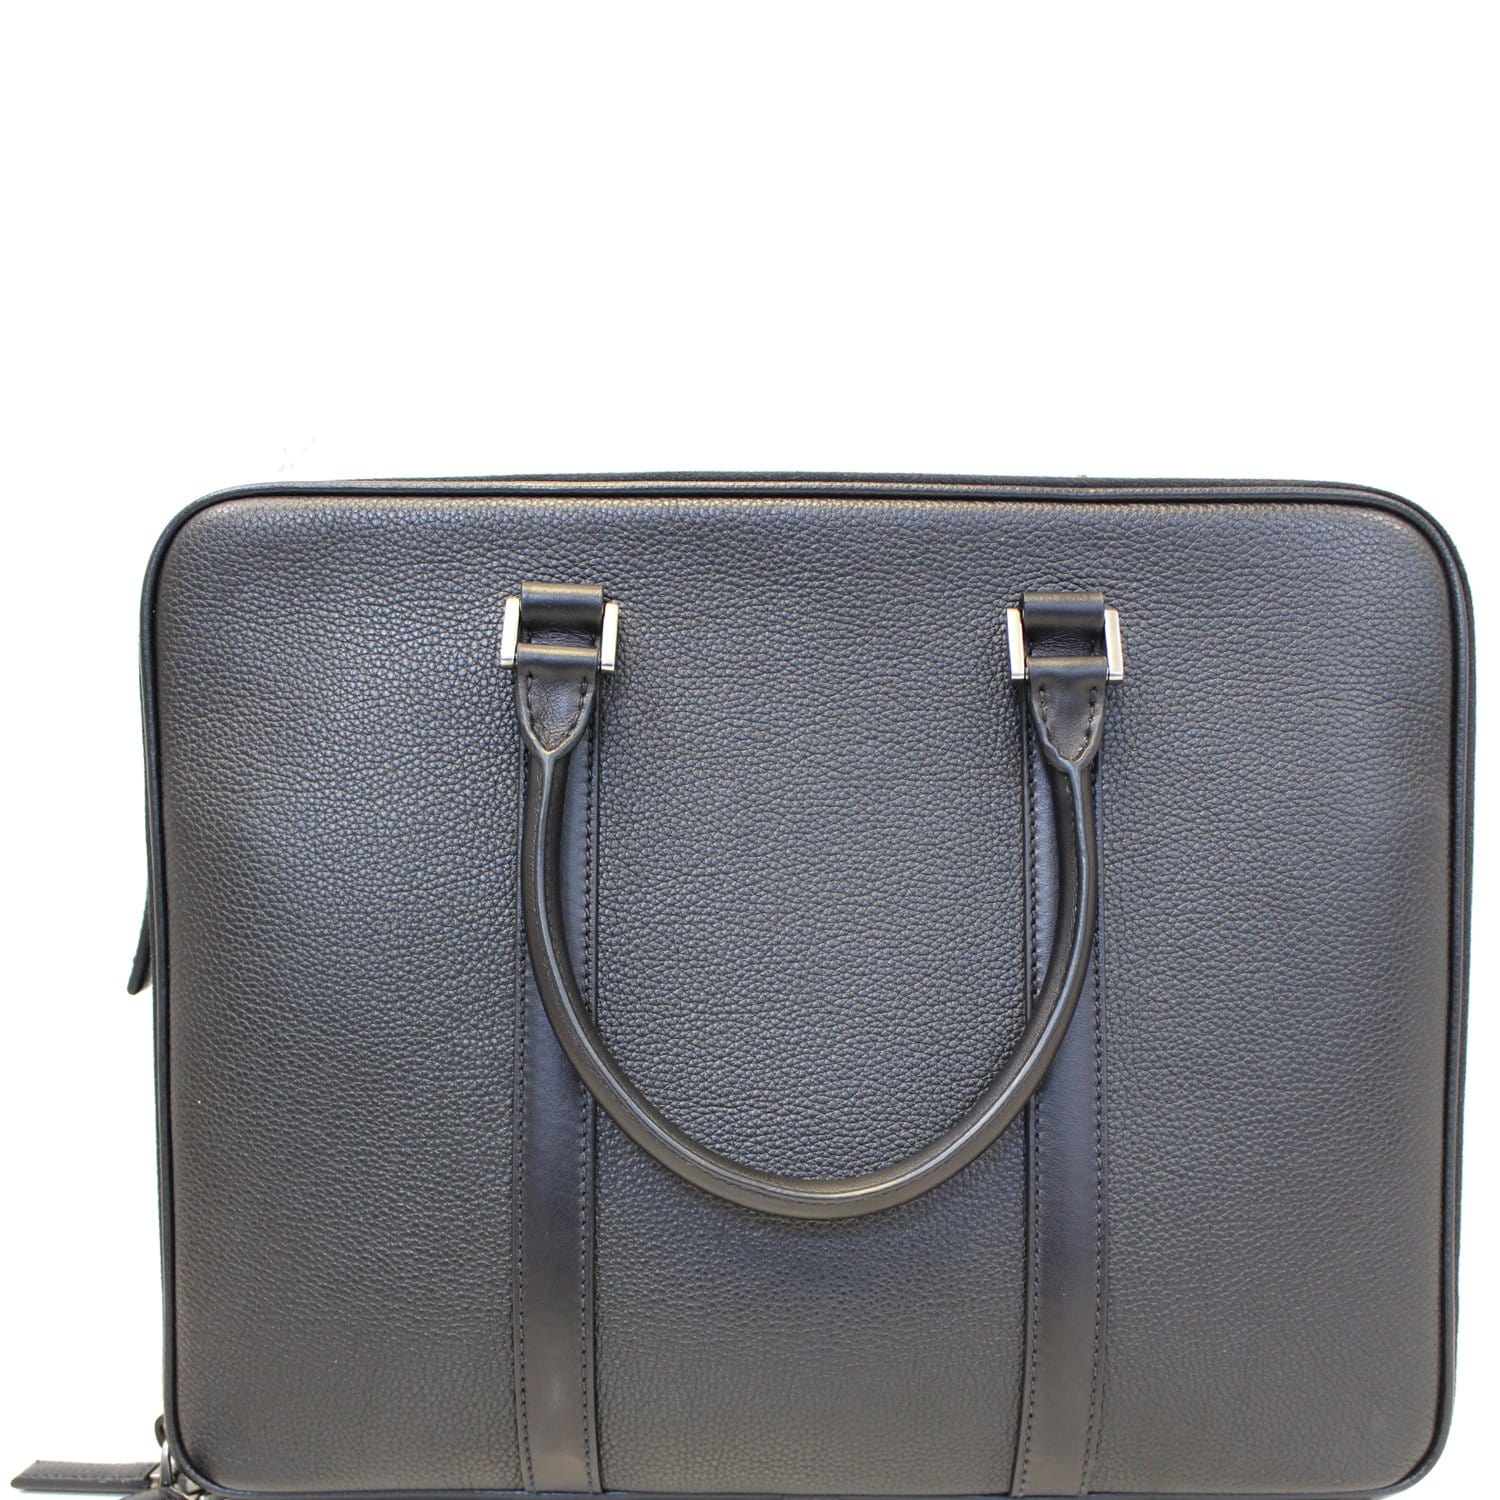 Prada Saffiano Leather Briefcase  Leather messenger bag men, Leather  briefcase, Leather laptop bag